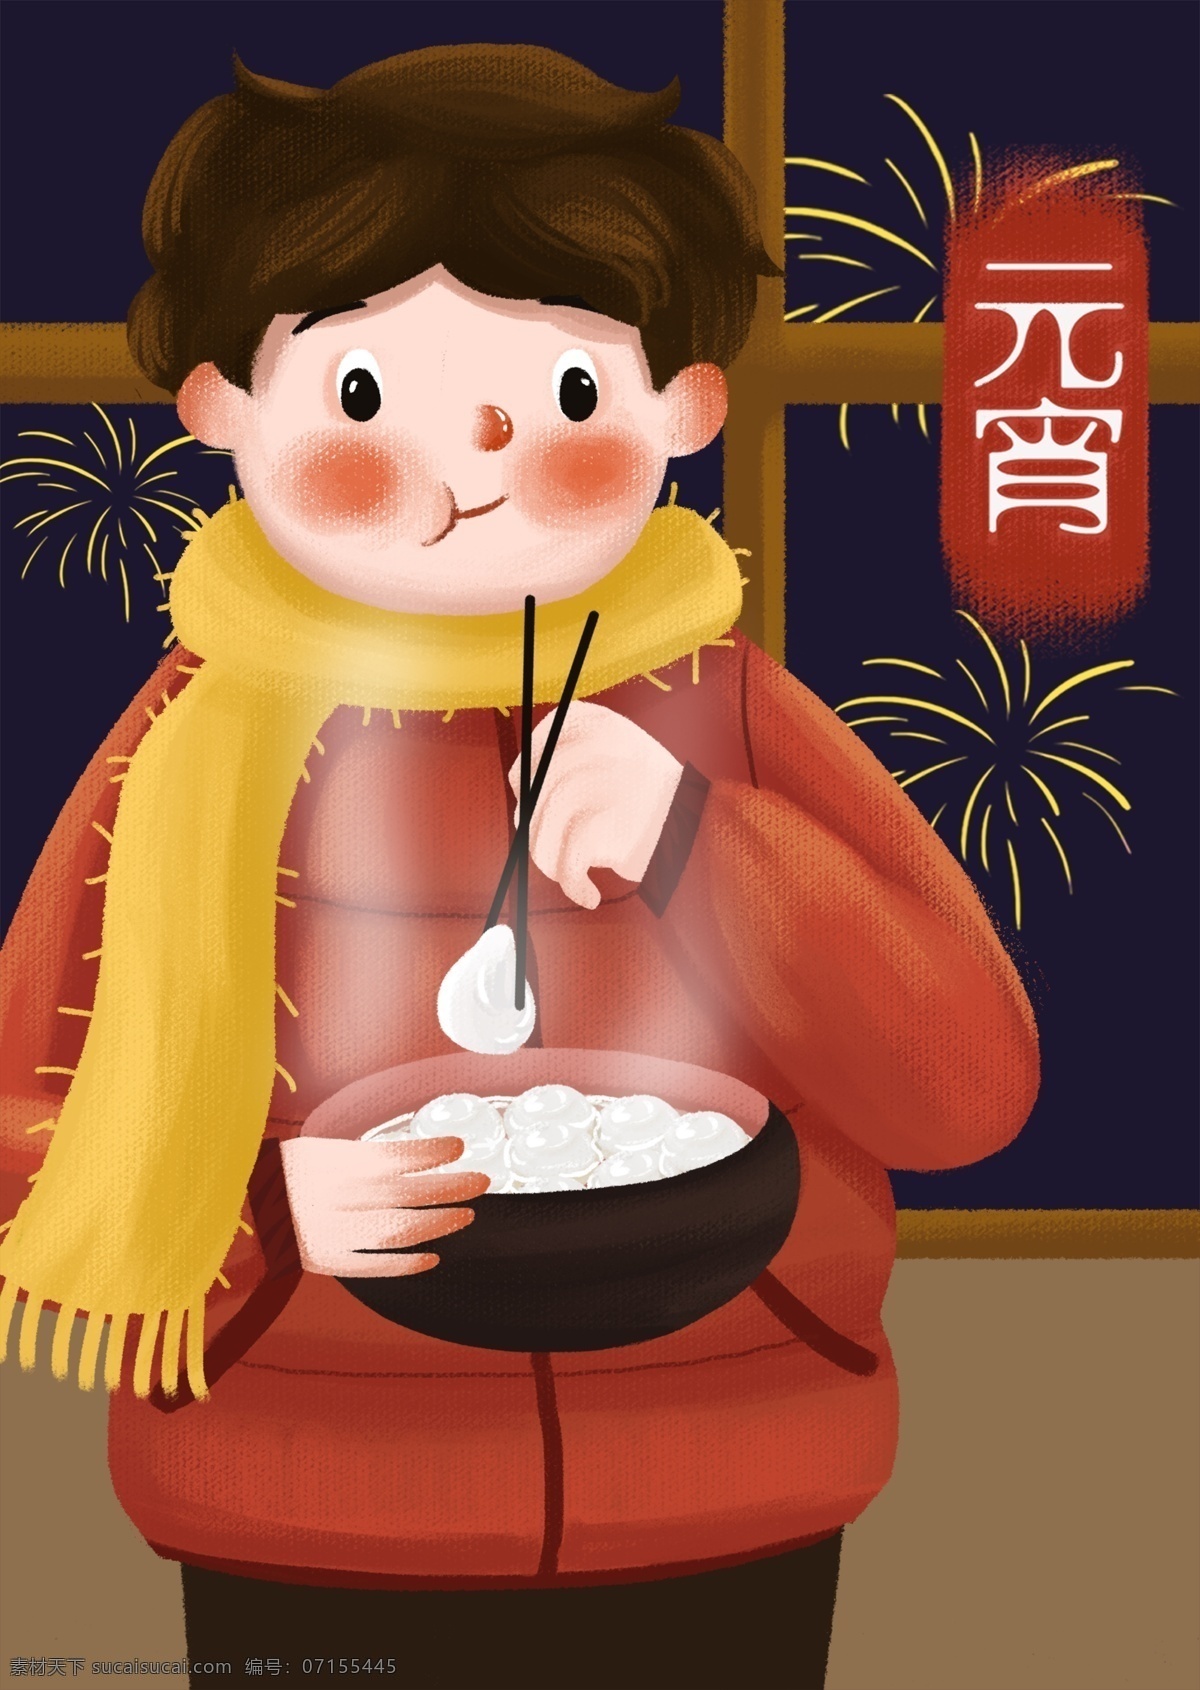 元宵节 吃 汤圆 元宵 节日 传统 习俗 男孩 插画 庆祝 中国传统节日 传统习俗 节日习俗